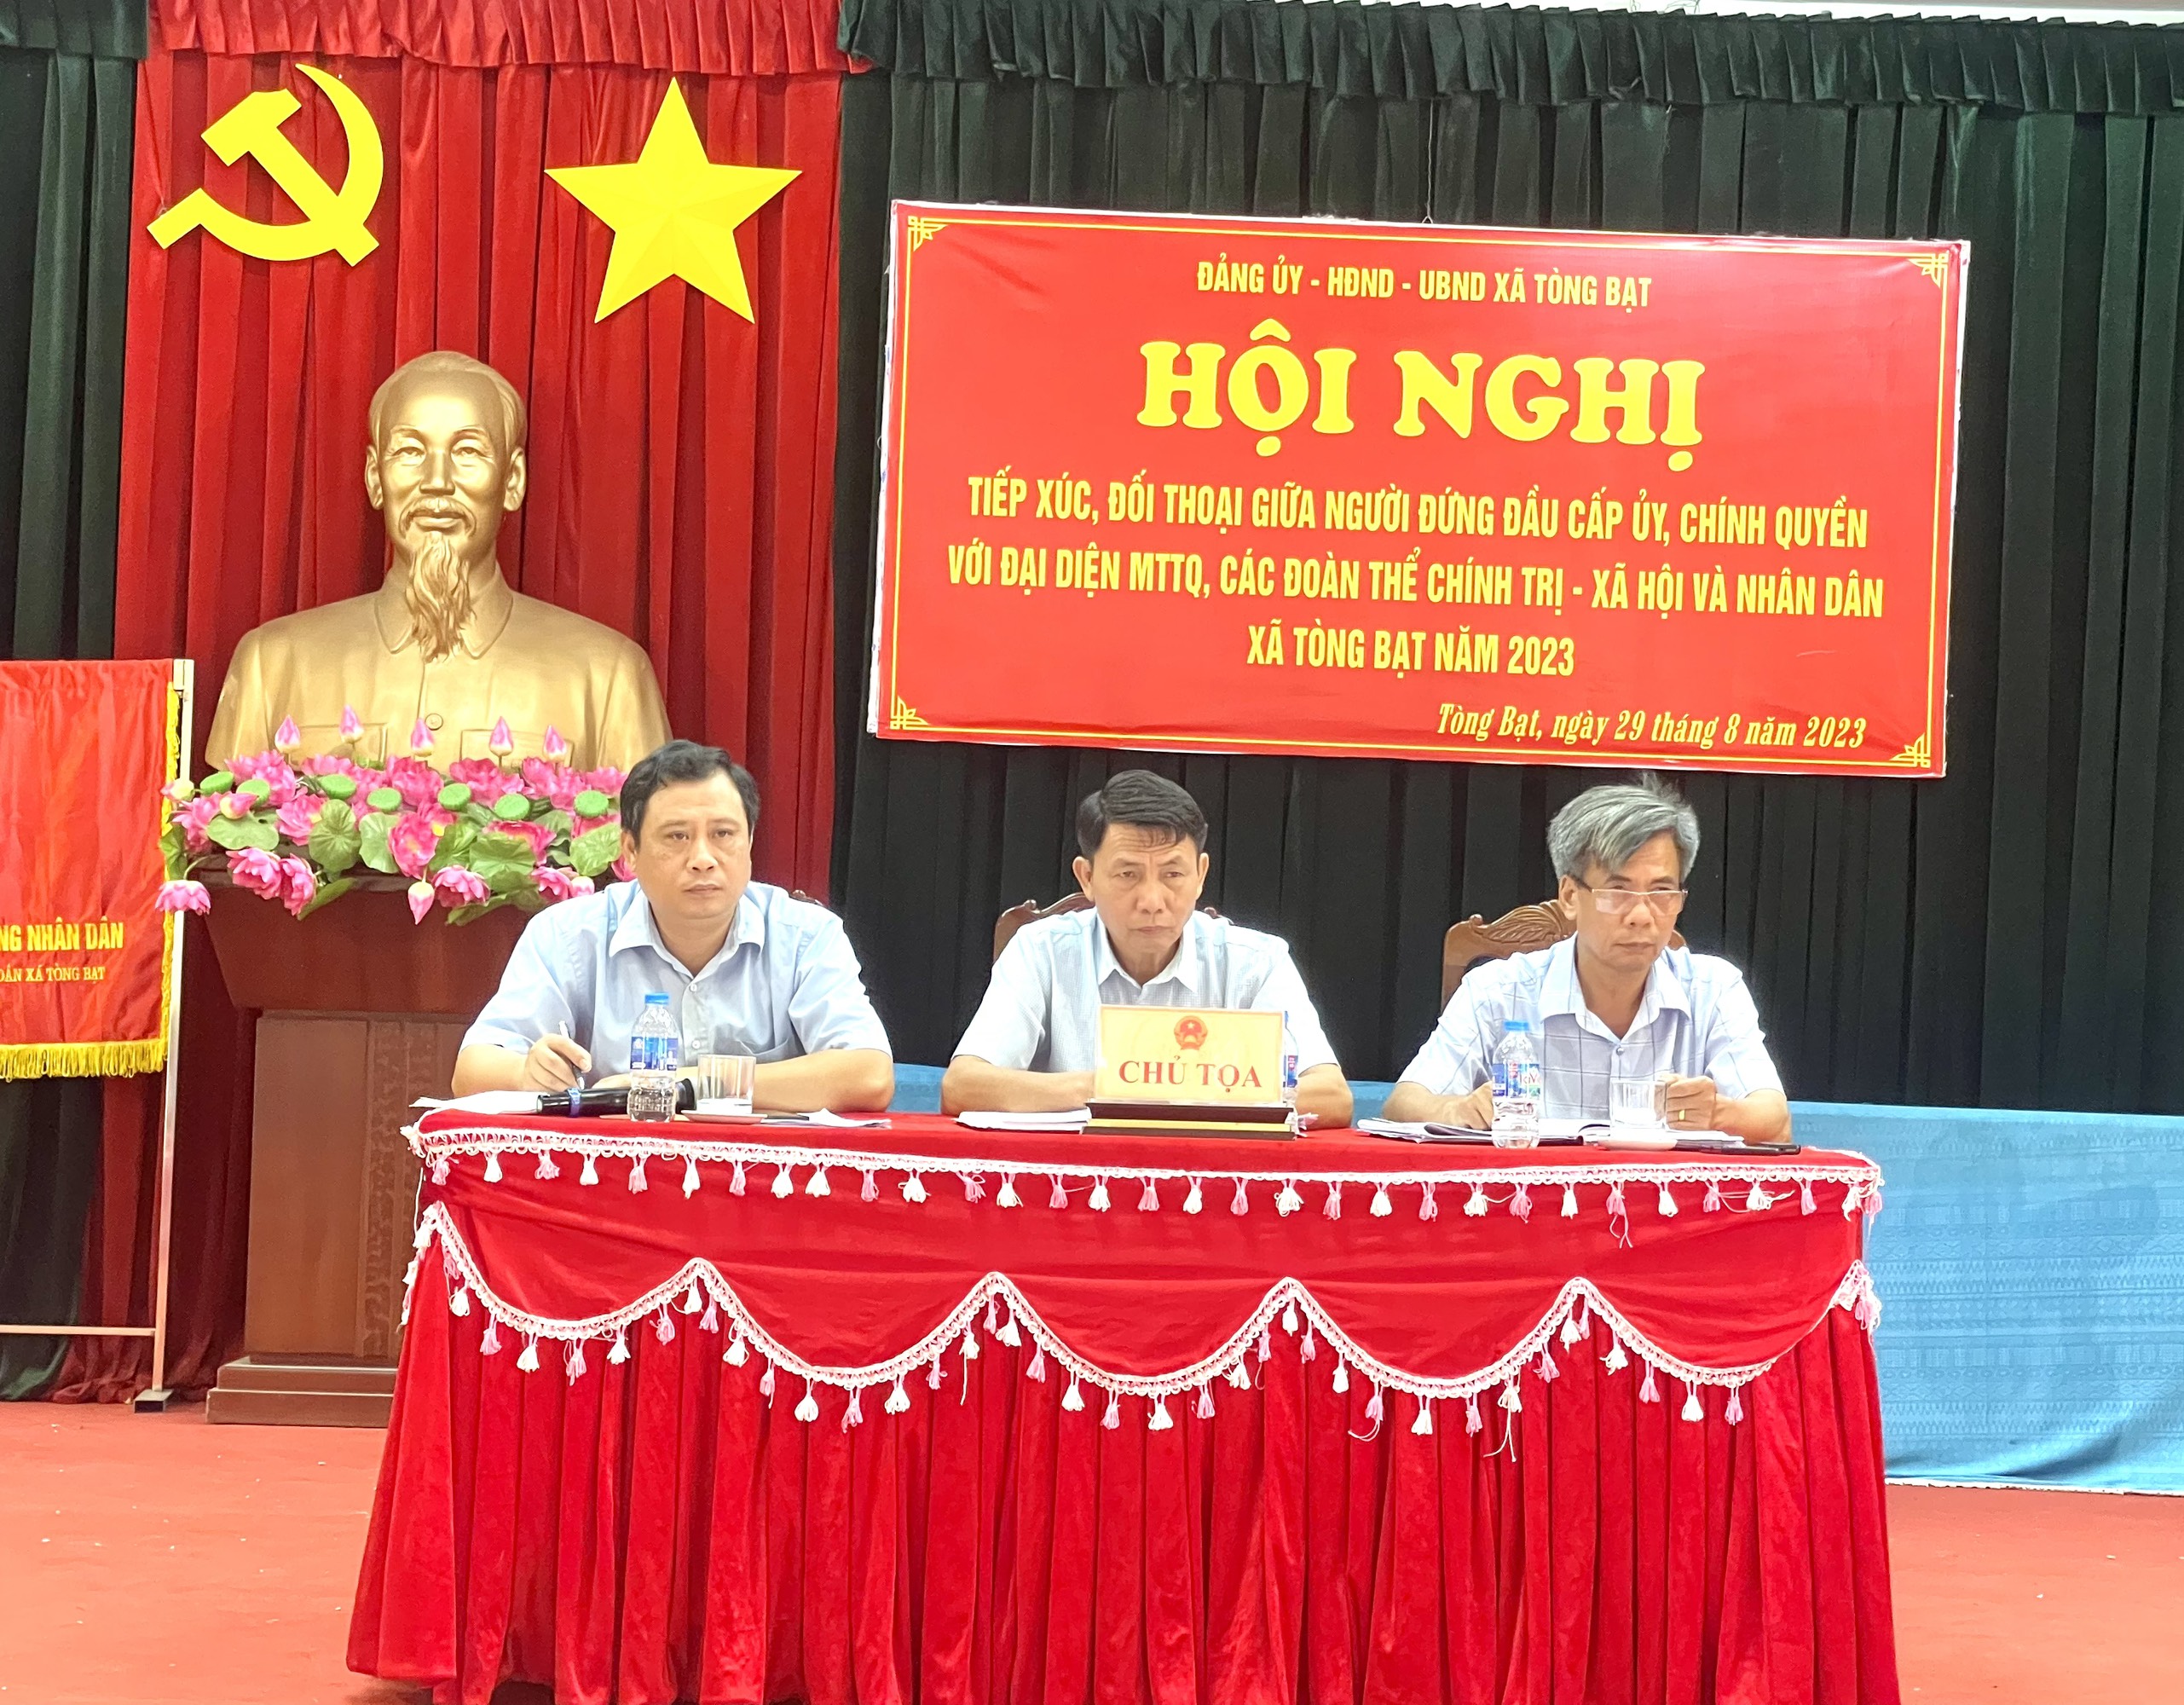 Xã Tòng Bạt tổ chức hội nghị đối thoại giữa người đứng đầu cấp ủy, chính quyền với đại diện MTTQ, các đoàn thể chính trị-xã hội và nhân dân năm 2023